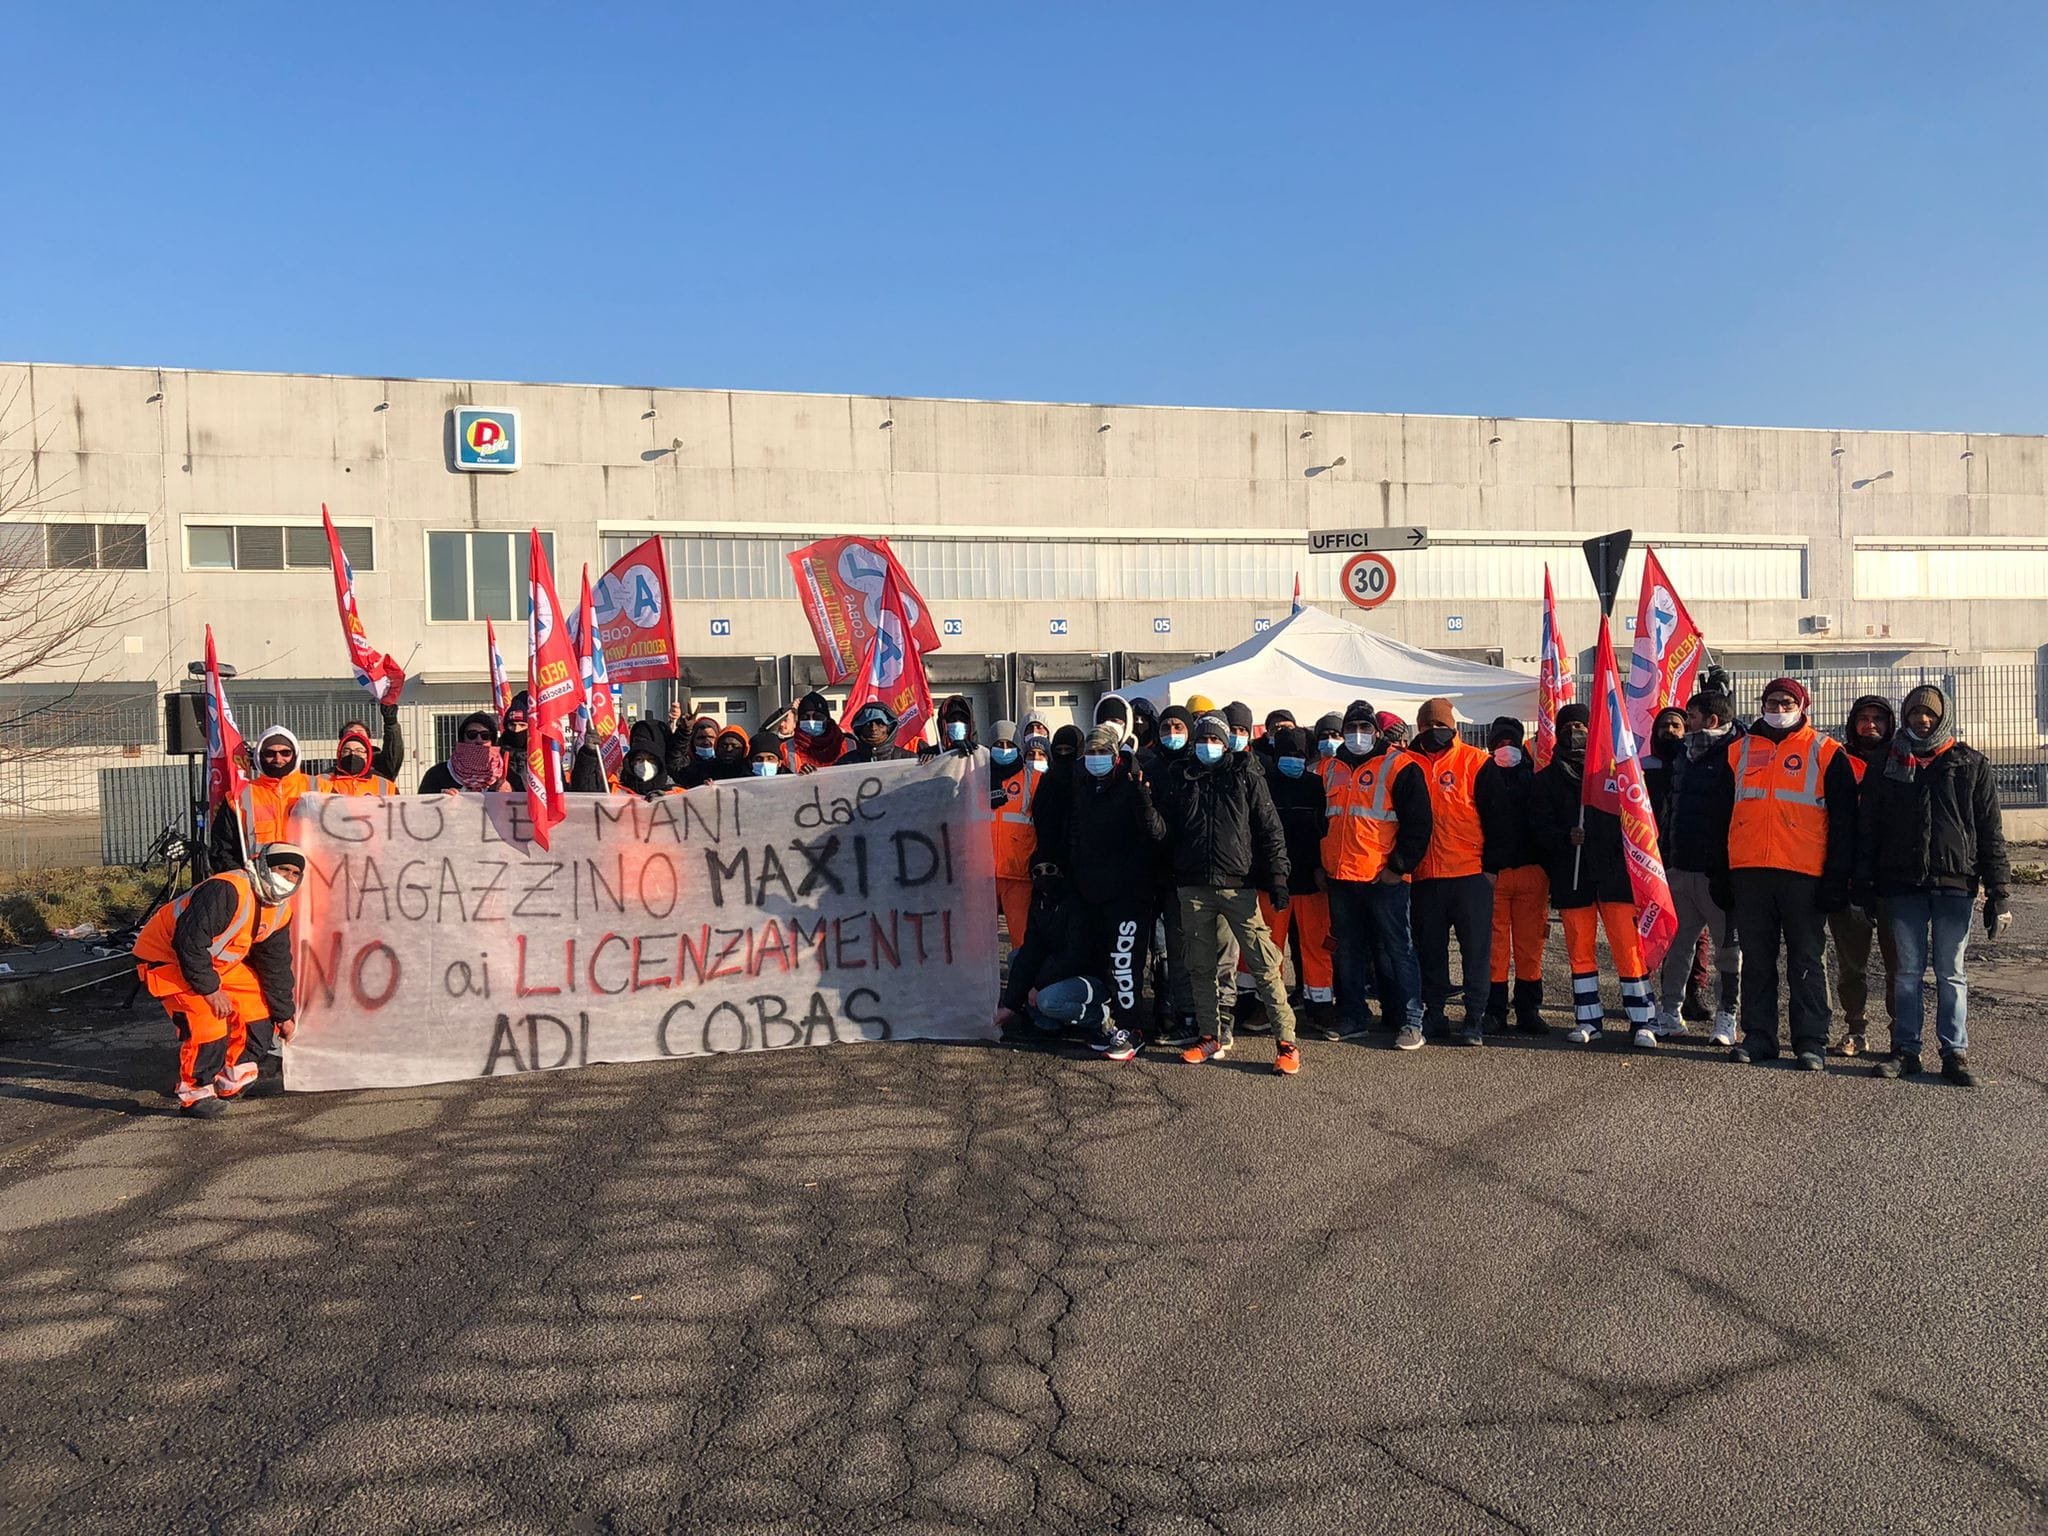 Magazzino Maxi Di, fissato incontro in Prefettura: lavoratori rimuovono il blocco delle merci